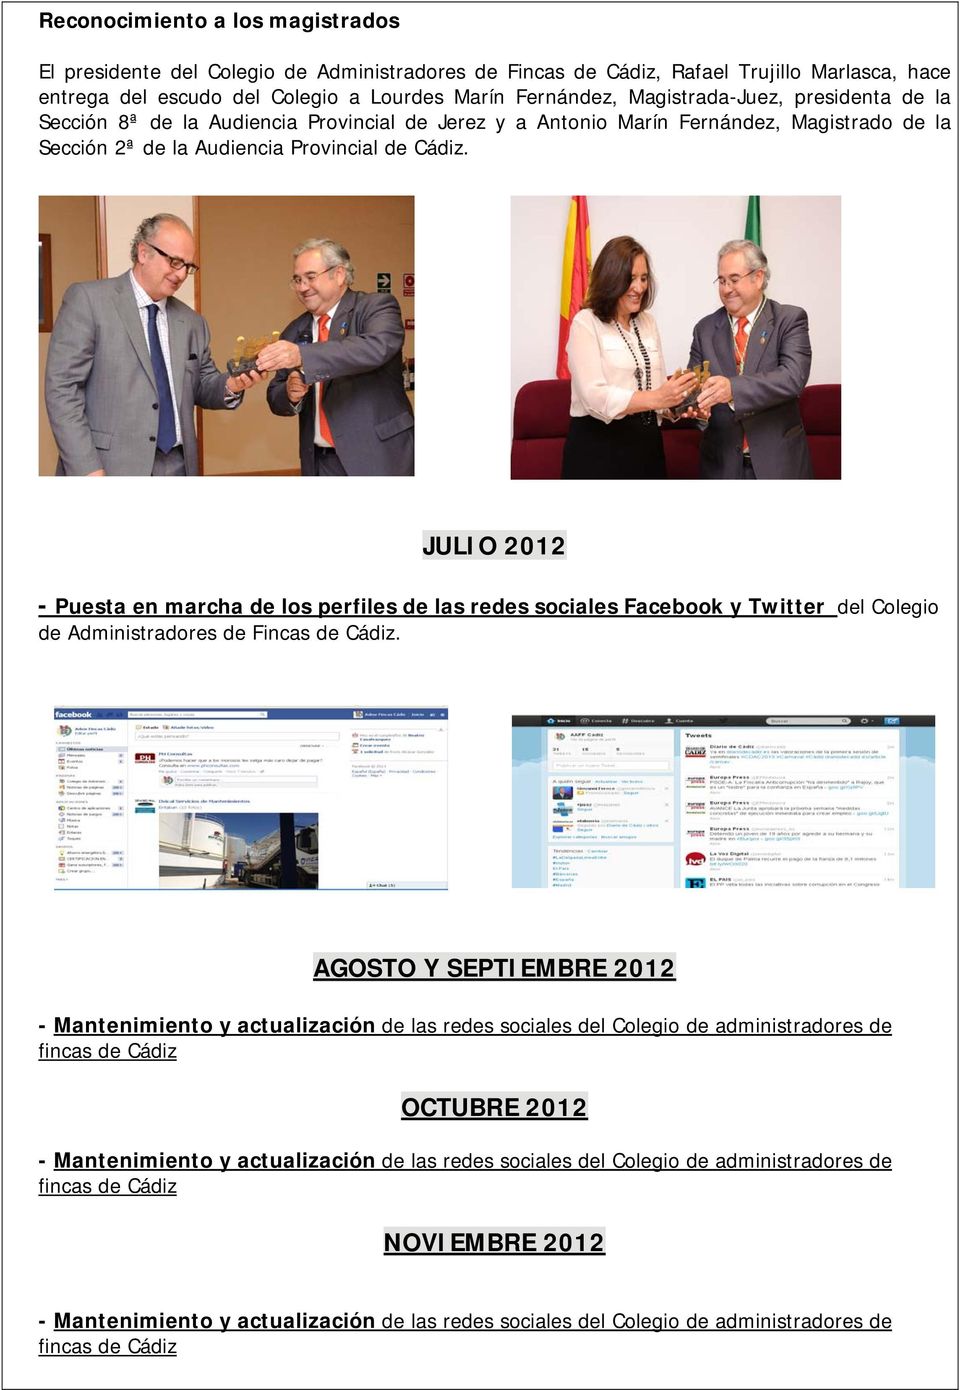 JULIO 2012 - Puesta en marcha de los perfiles de las redes sociales Facebook y Twitter del Colegio de Administradores de Fincas de Cádiz.